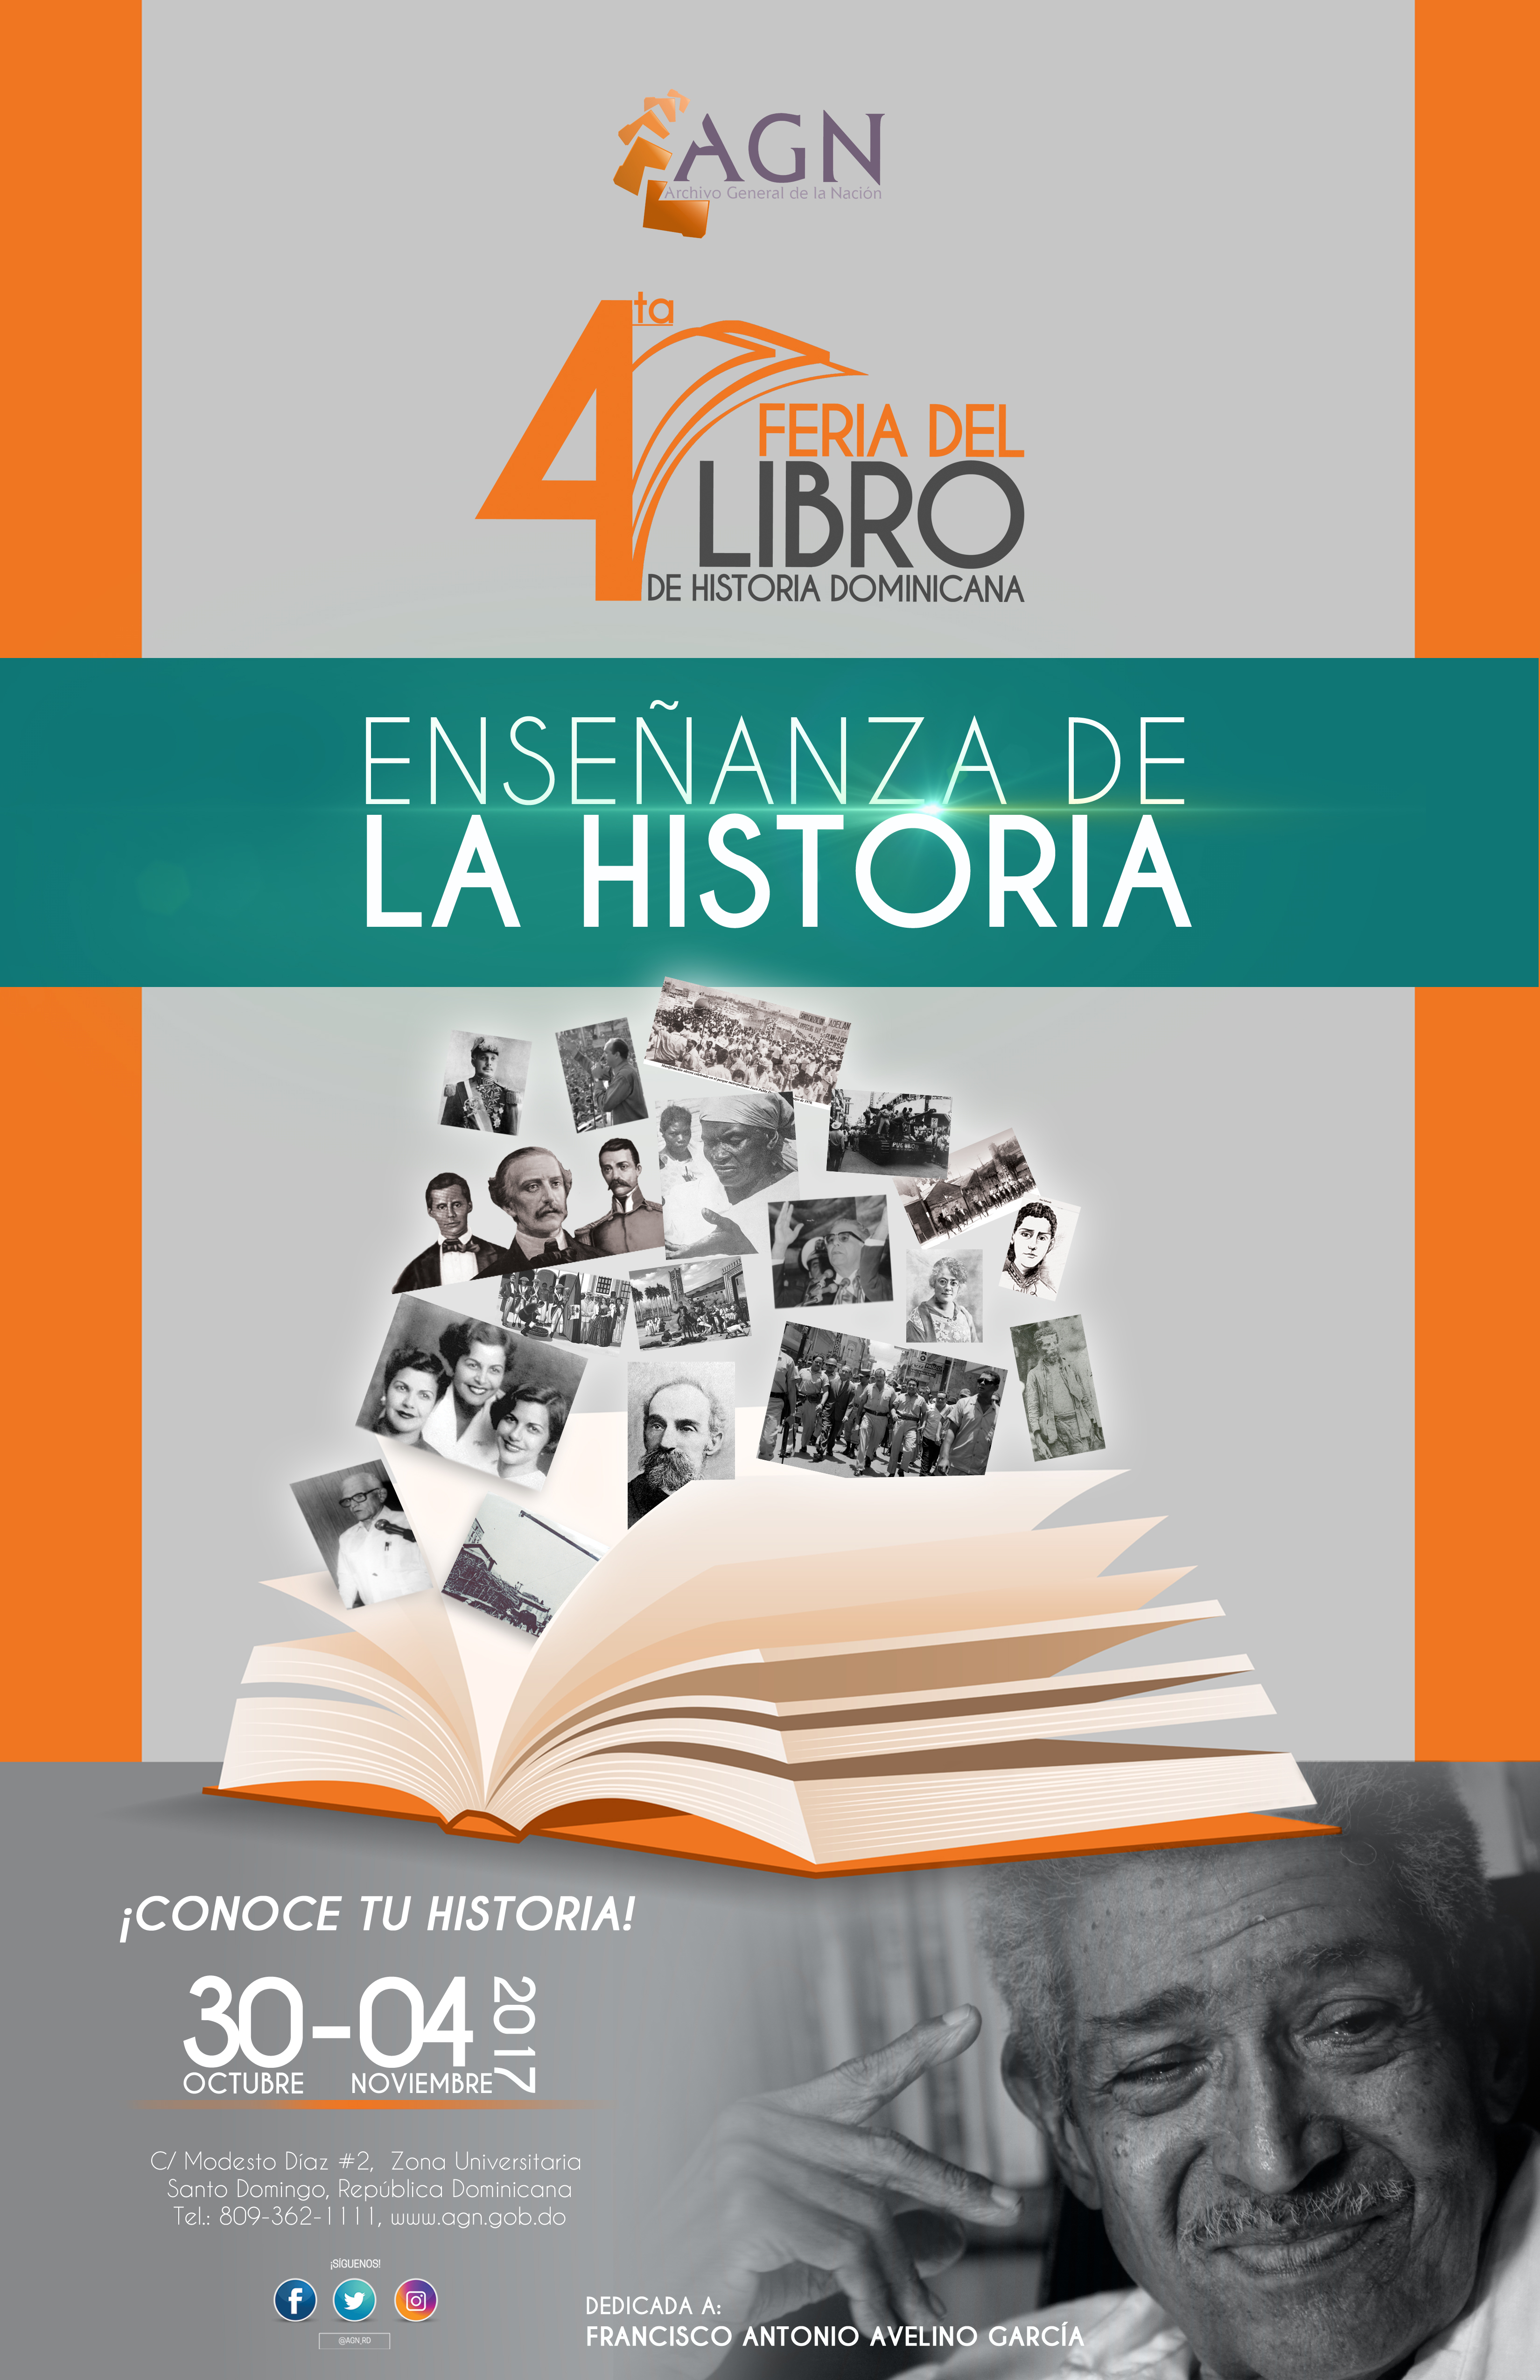  Archivo General de la Nación pondrá en circulación 15 libros en cuarta Feria del Libro de Historia Dominicana